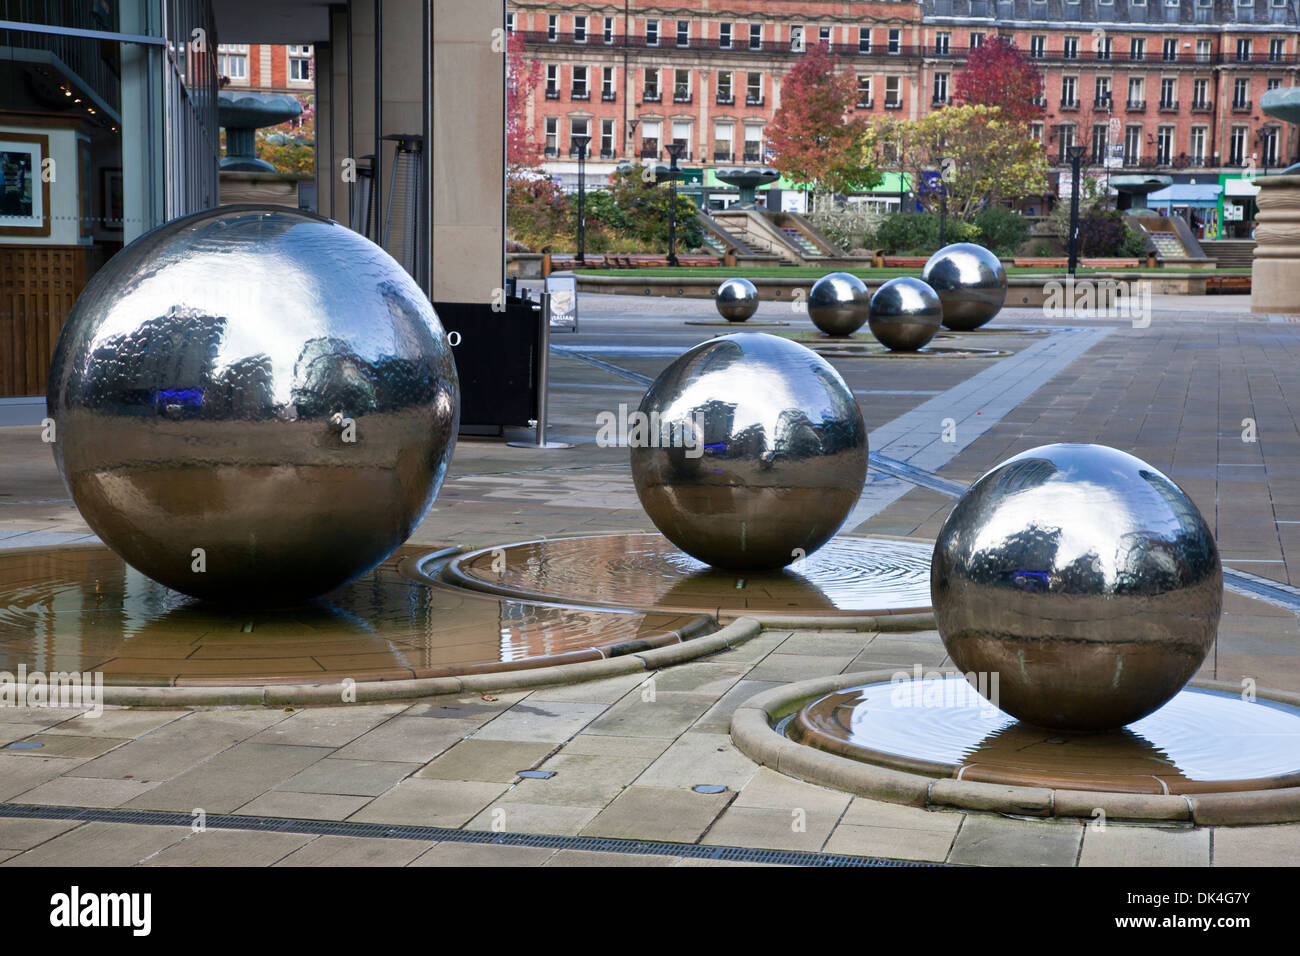 Bola de plata características de agua, parte del diseño urbano en el centro de la ciudad de Sheffield, South Yorkshire, Inglaterra Foto de stock